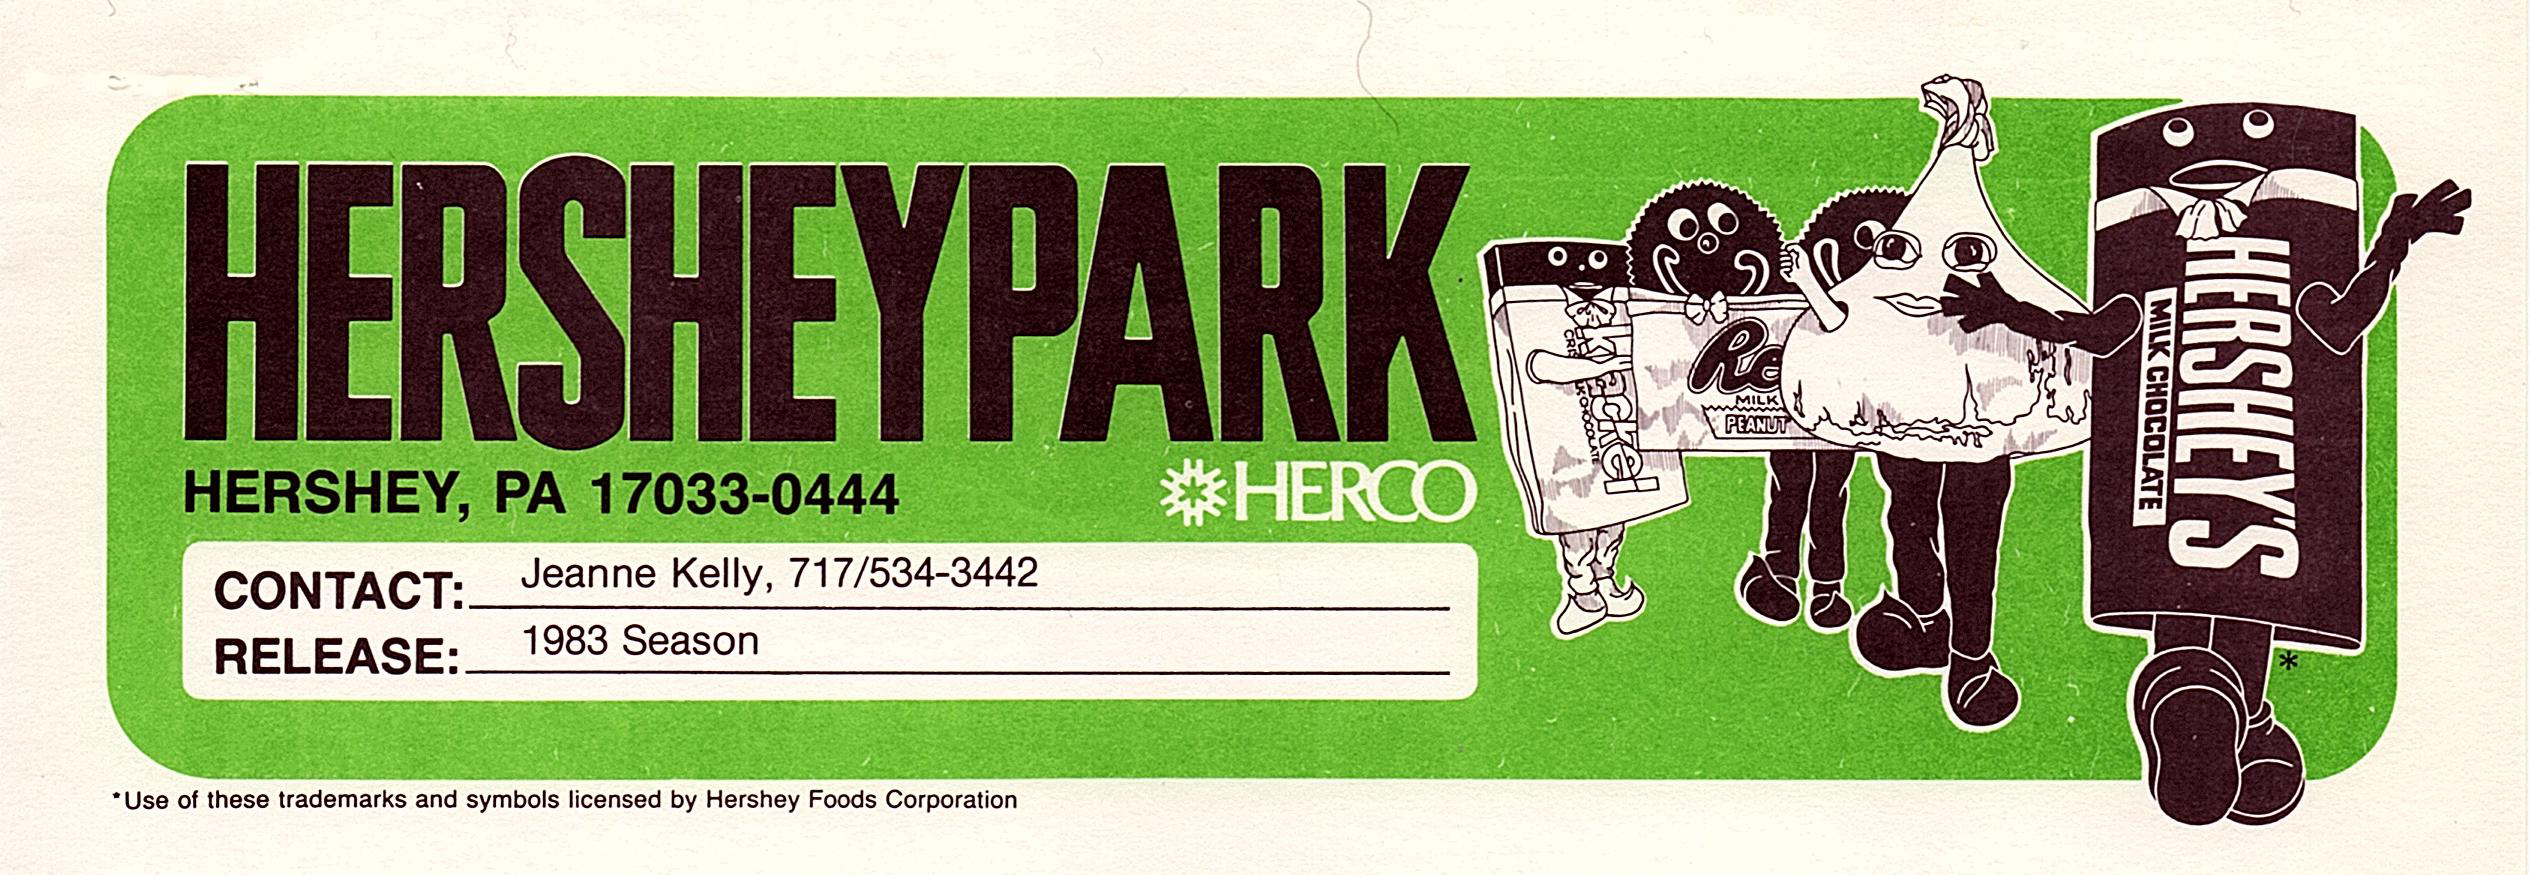 Hersheypark letterhead, 1983.